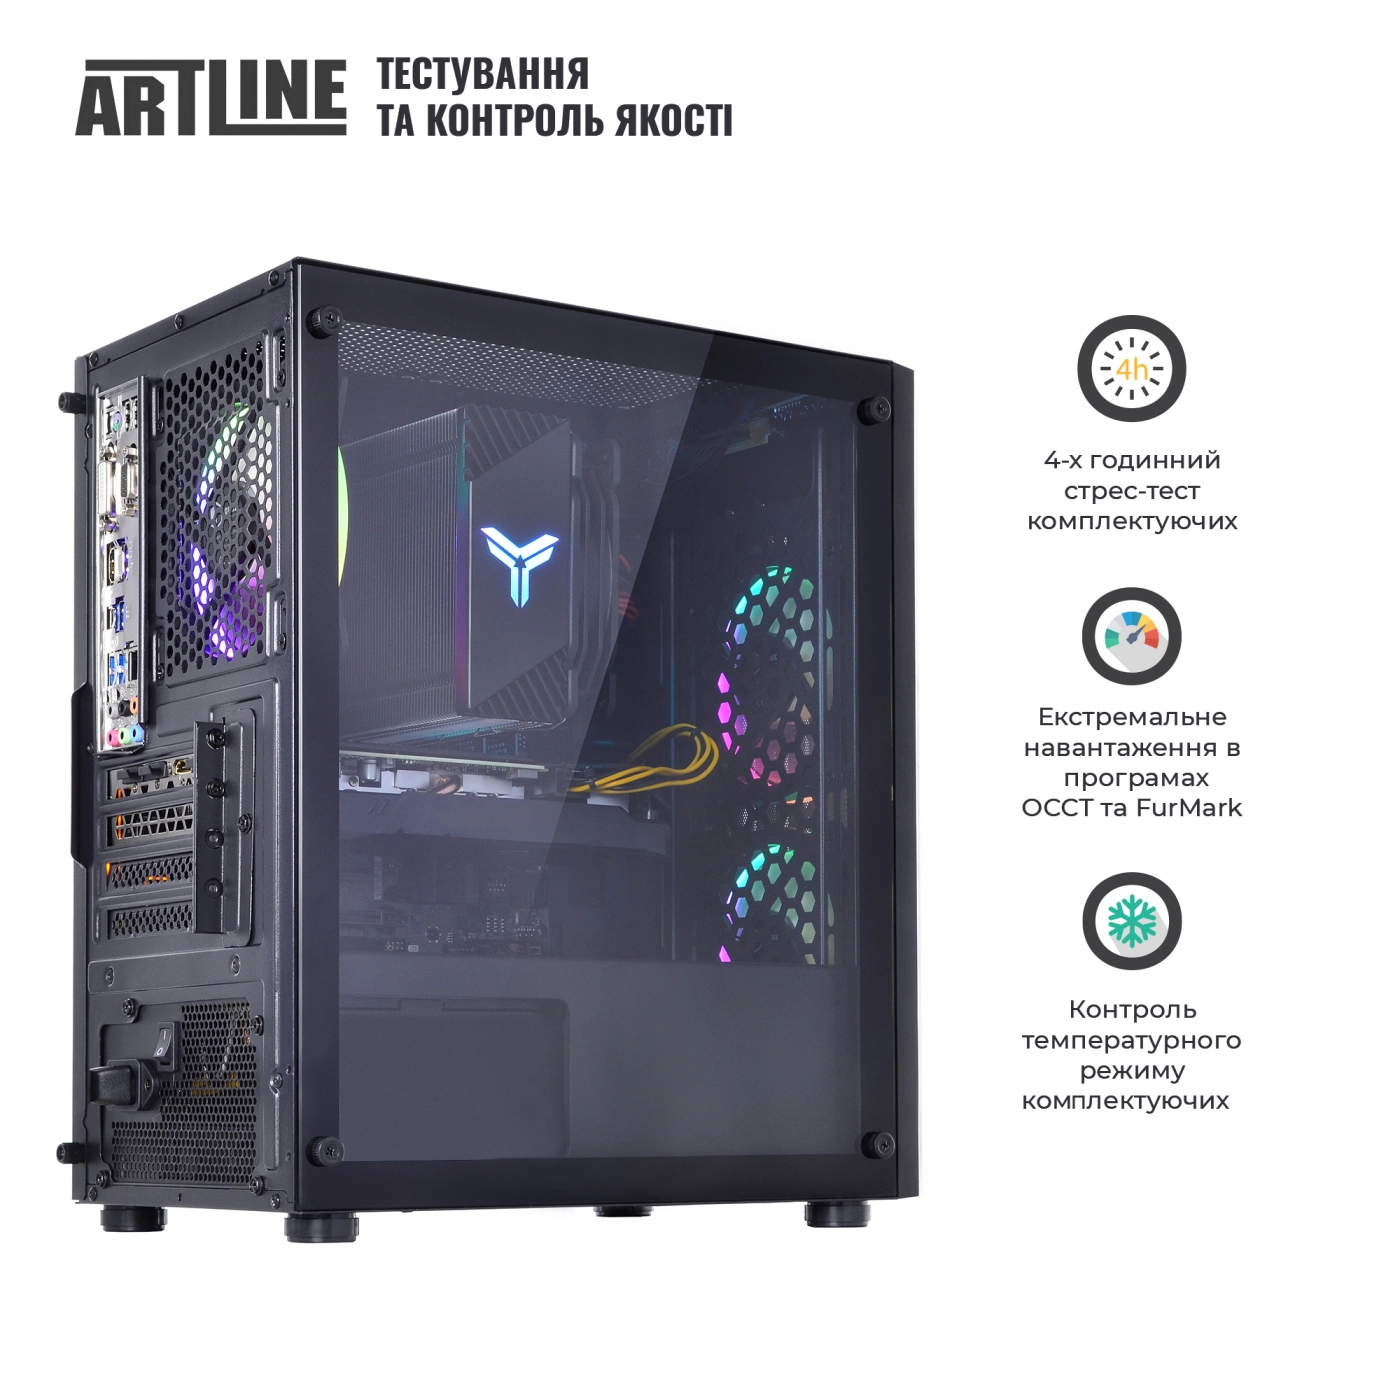 Купить Компьютер ARTLINE Gaming X71v60 - фото 9